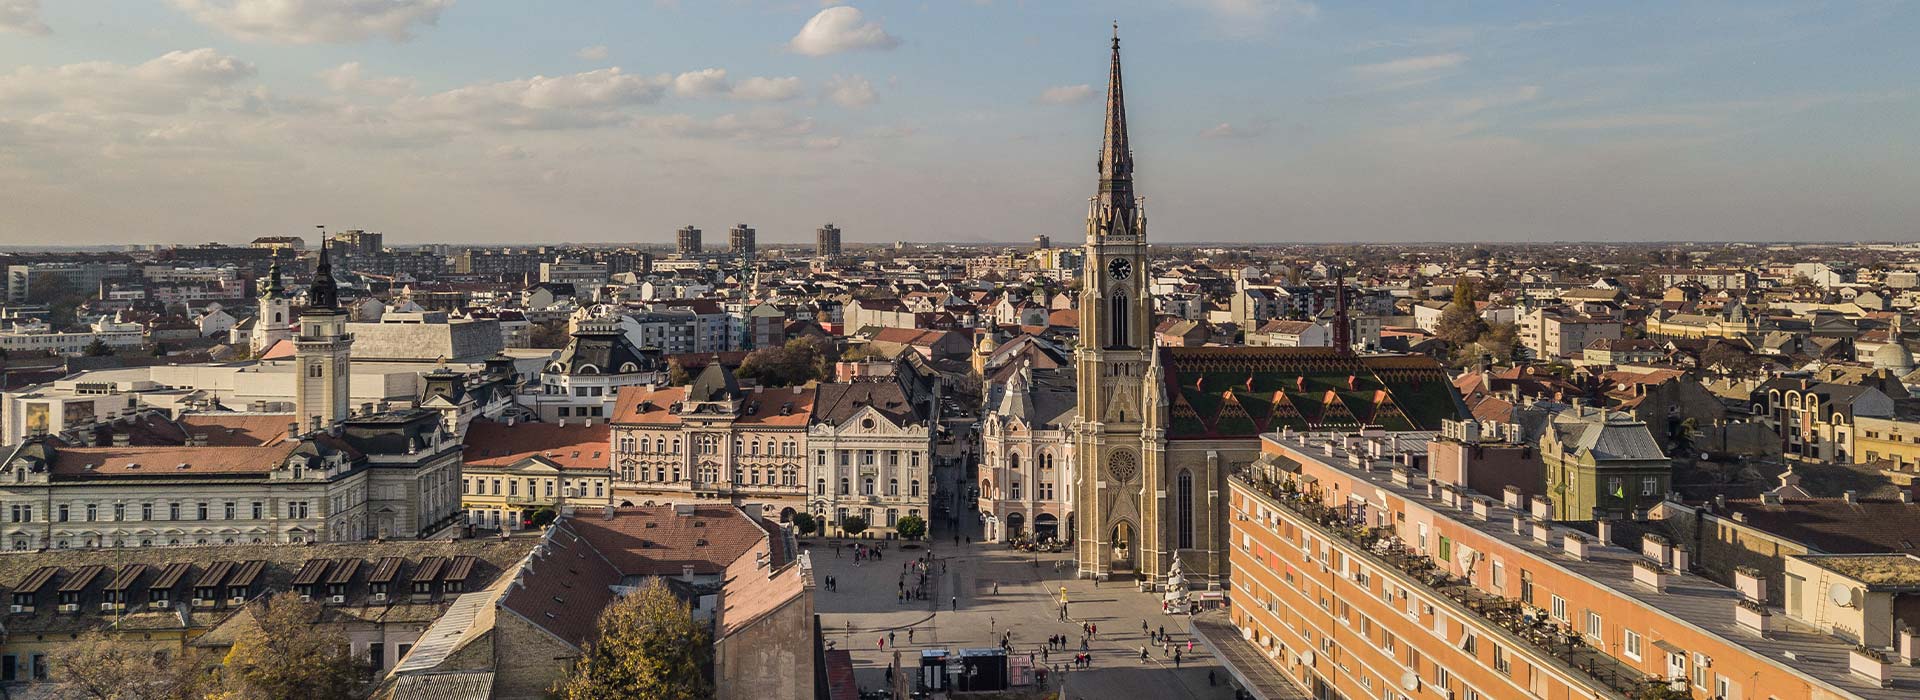 Rent a car Sajmiste | Novi Sad, Serbia